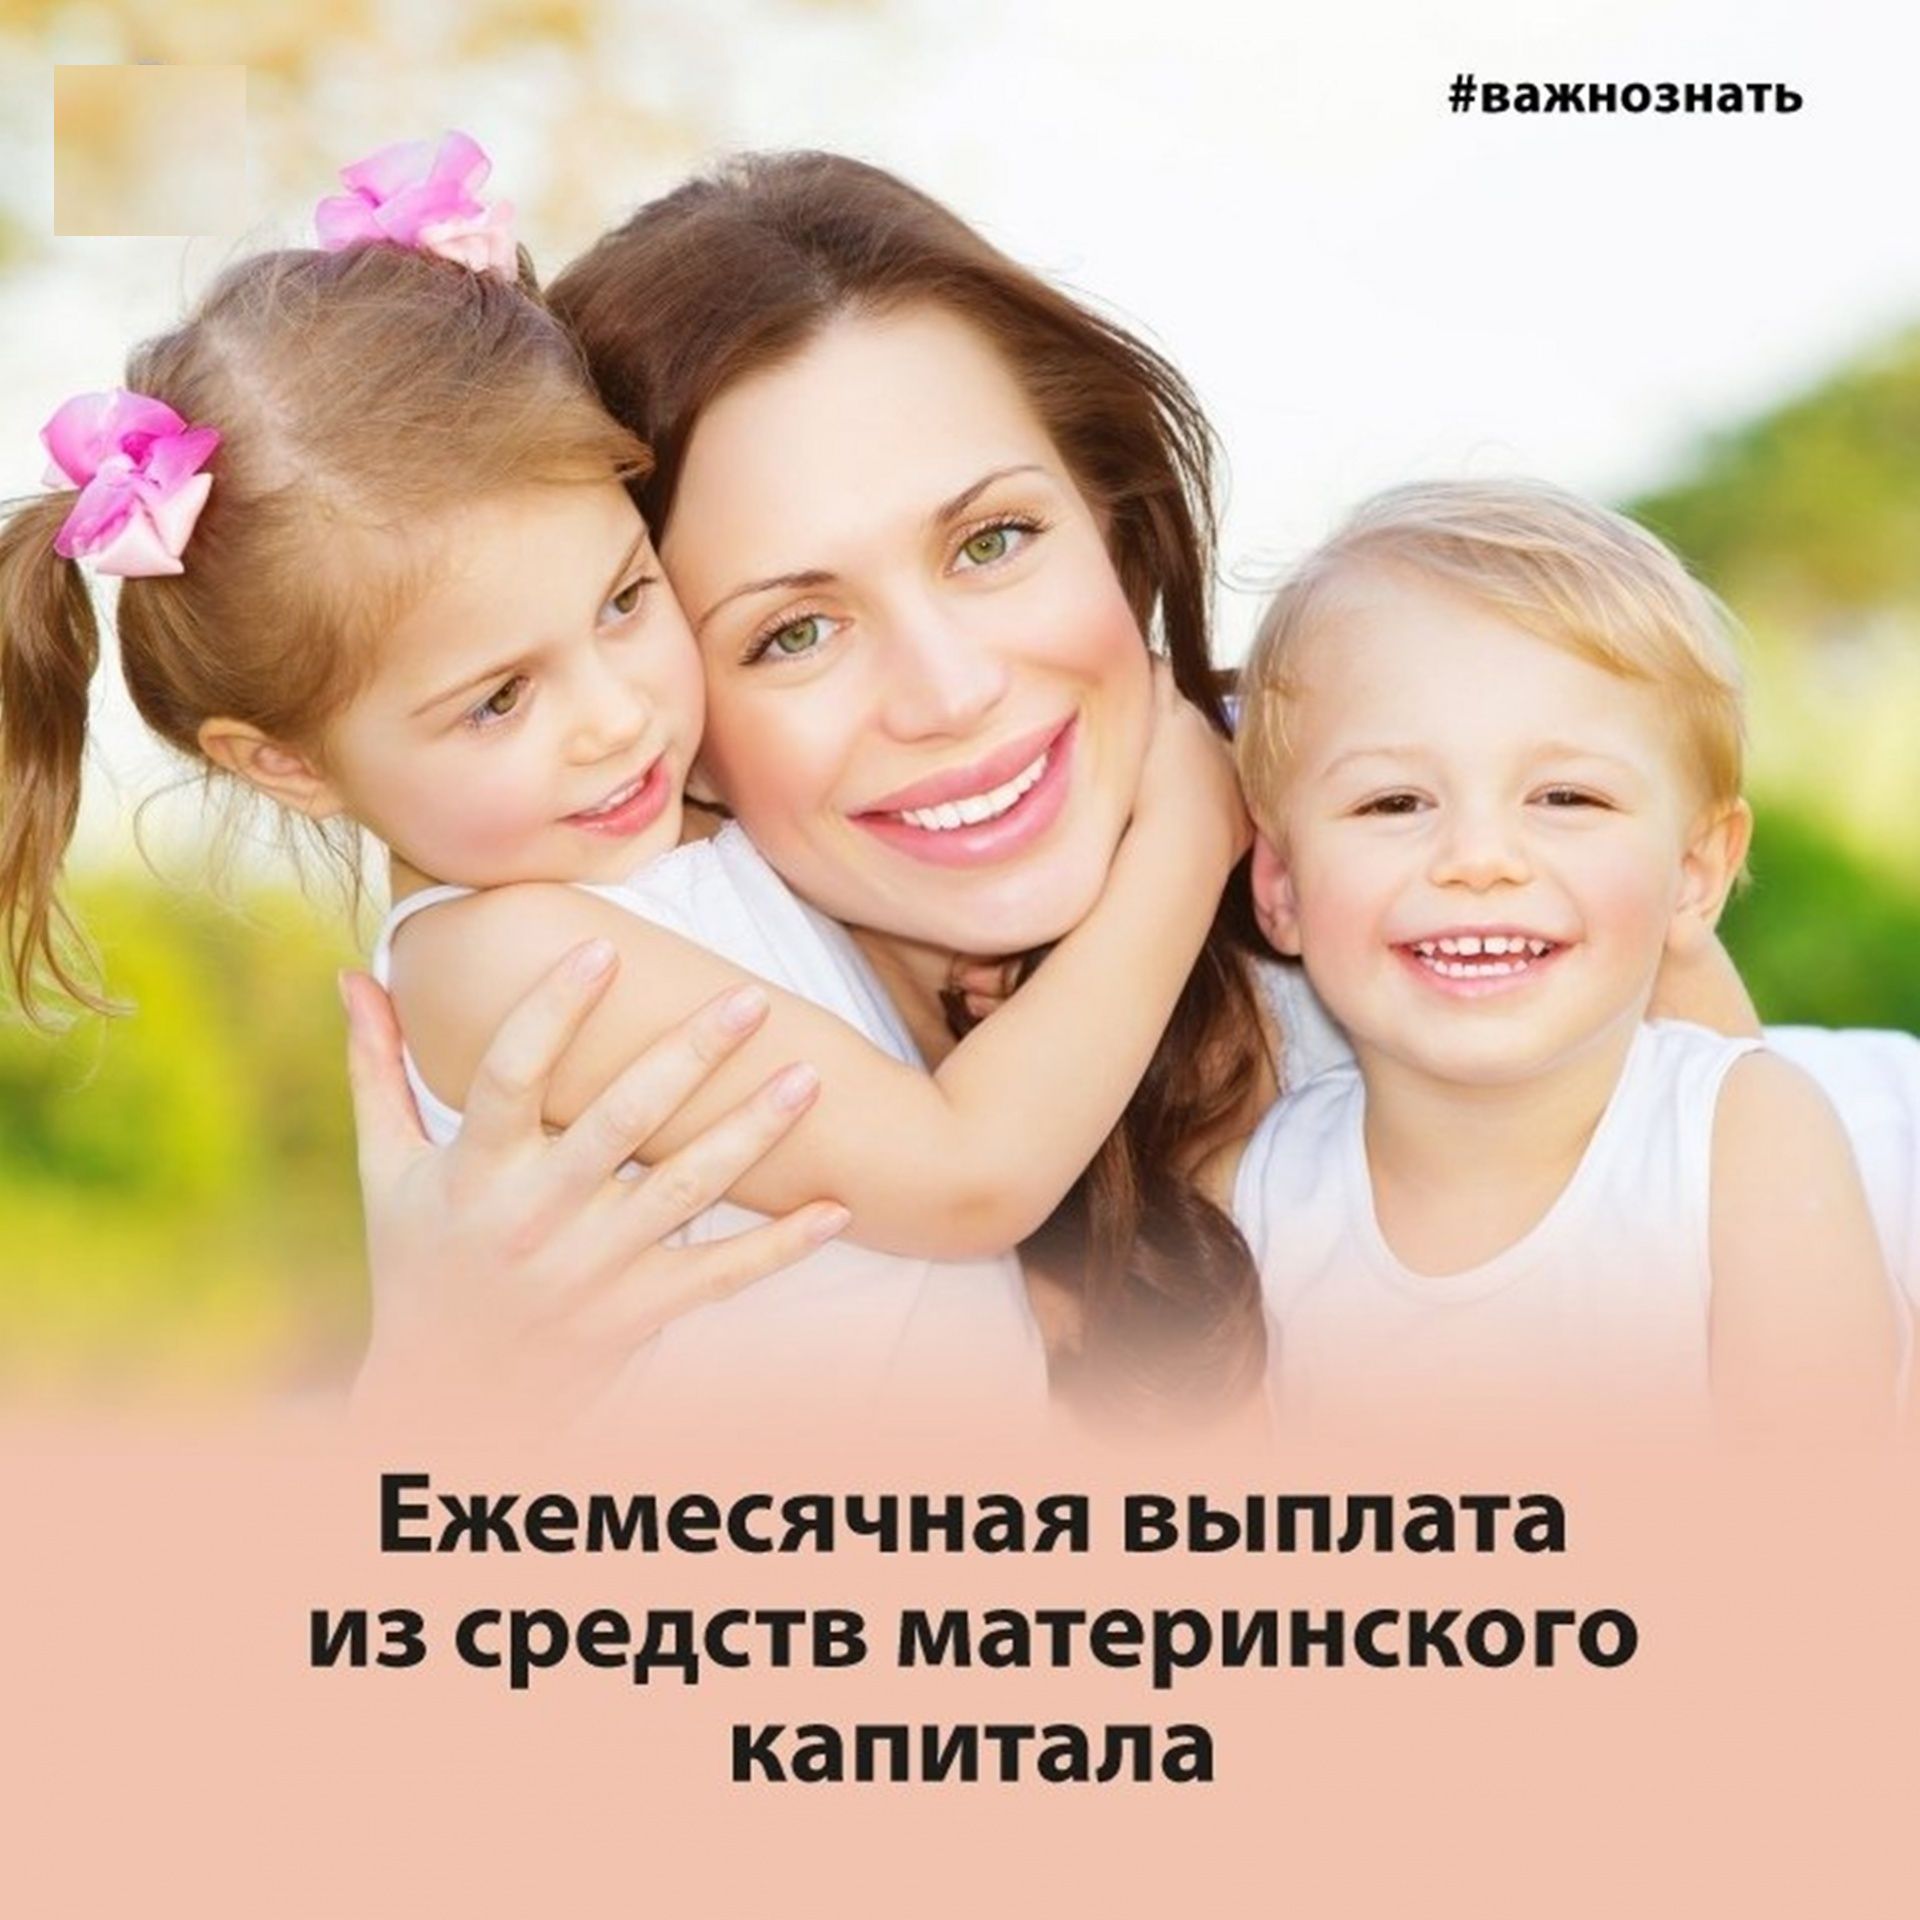 Более 500 семей Мордовии получают ежемесячную выплату из средств материнского капитала.